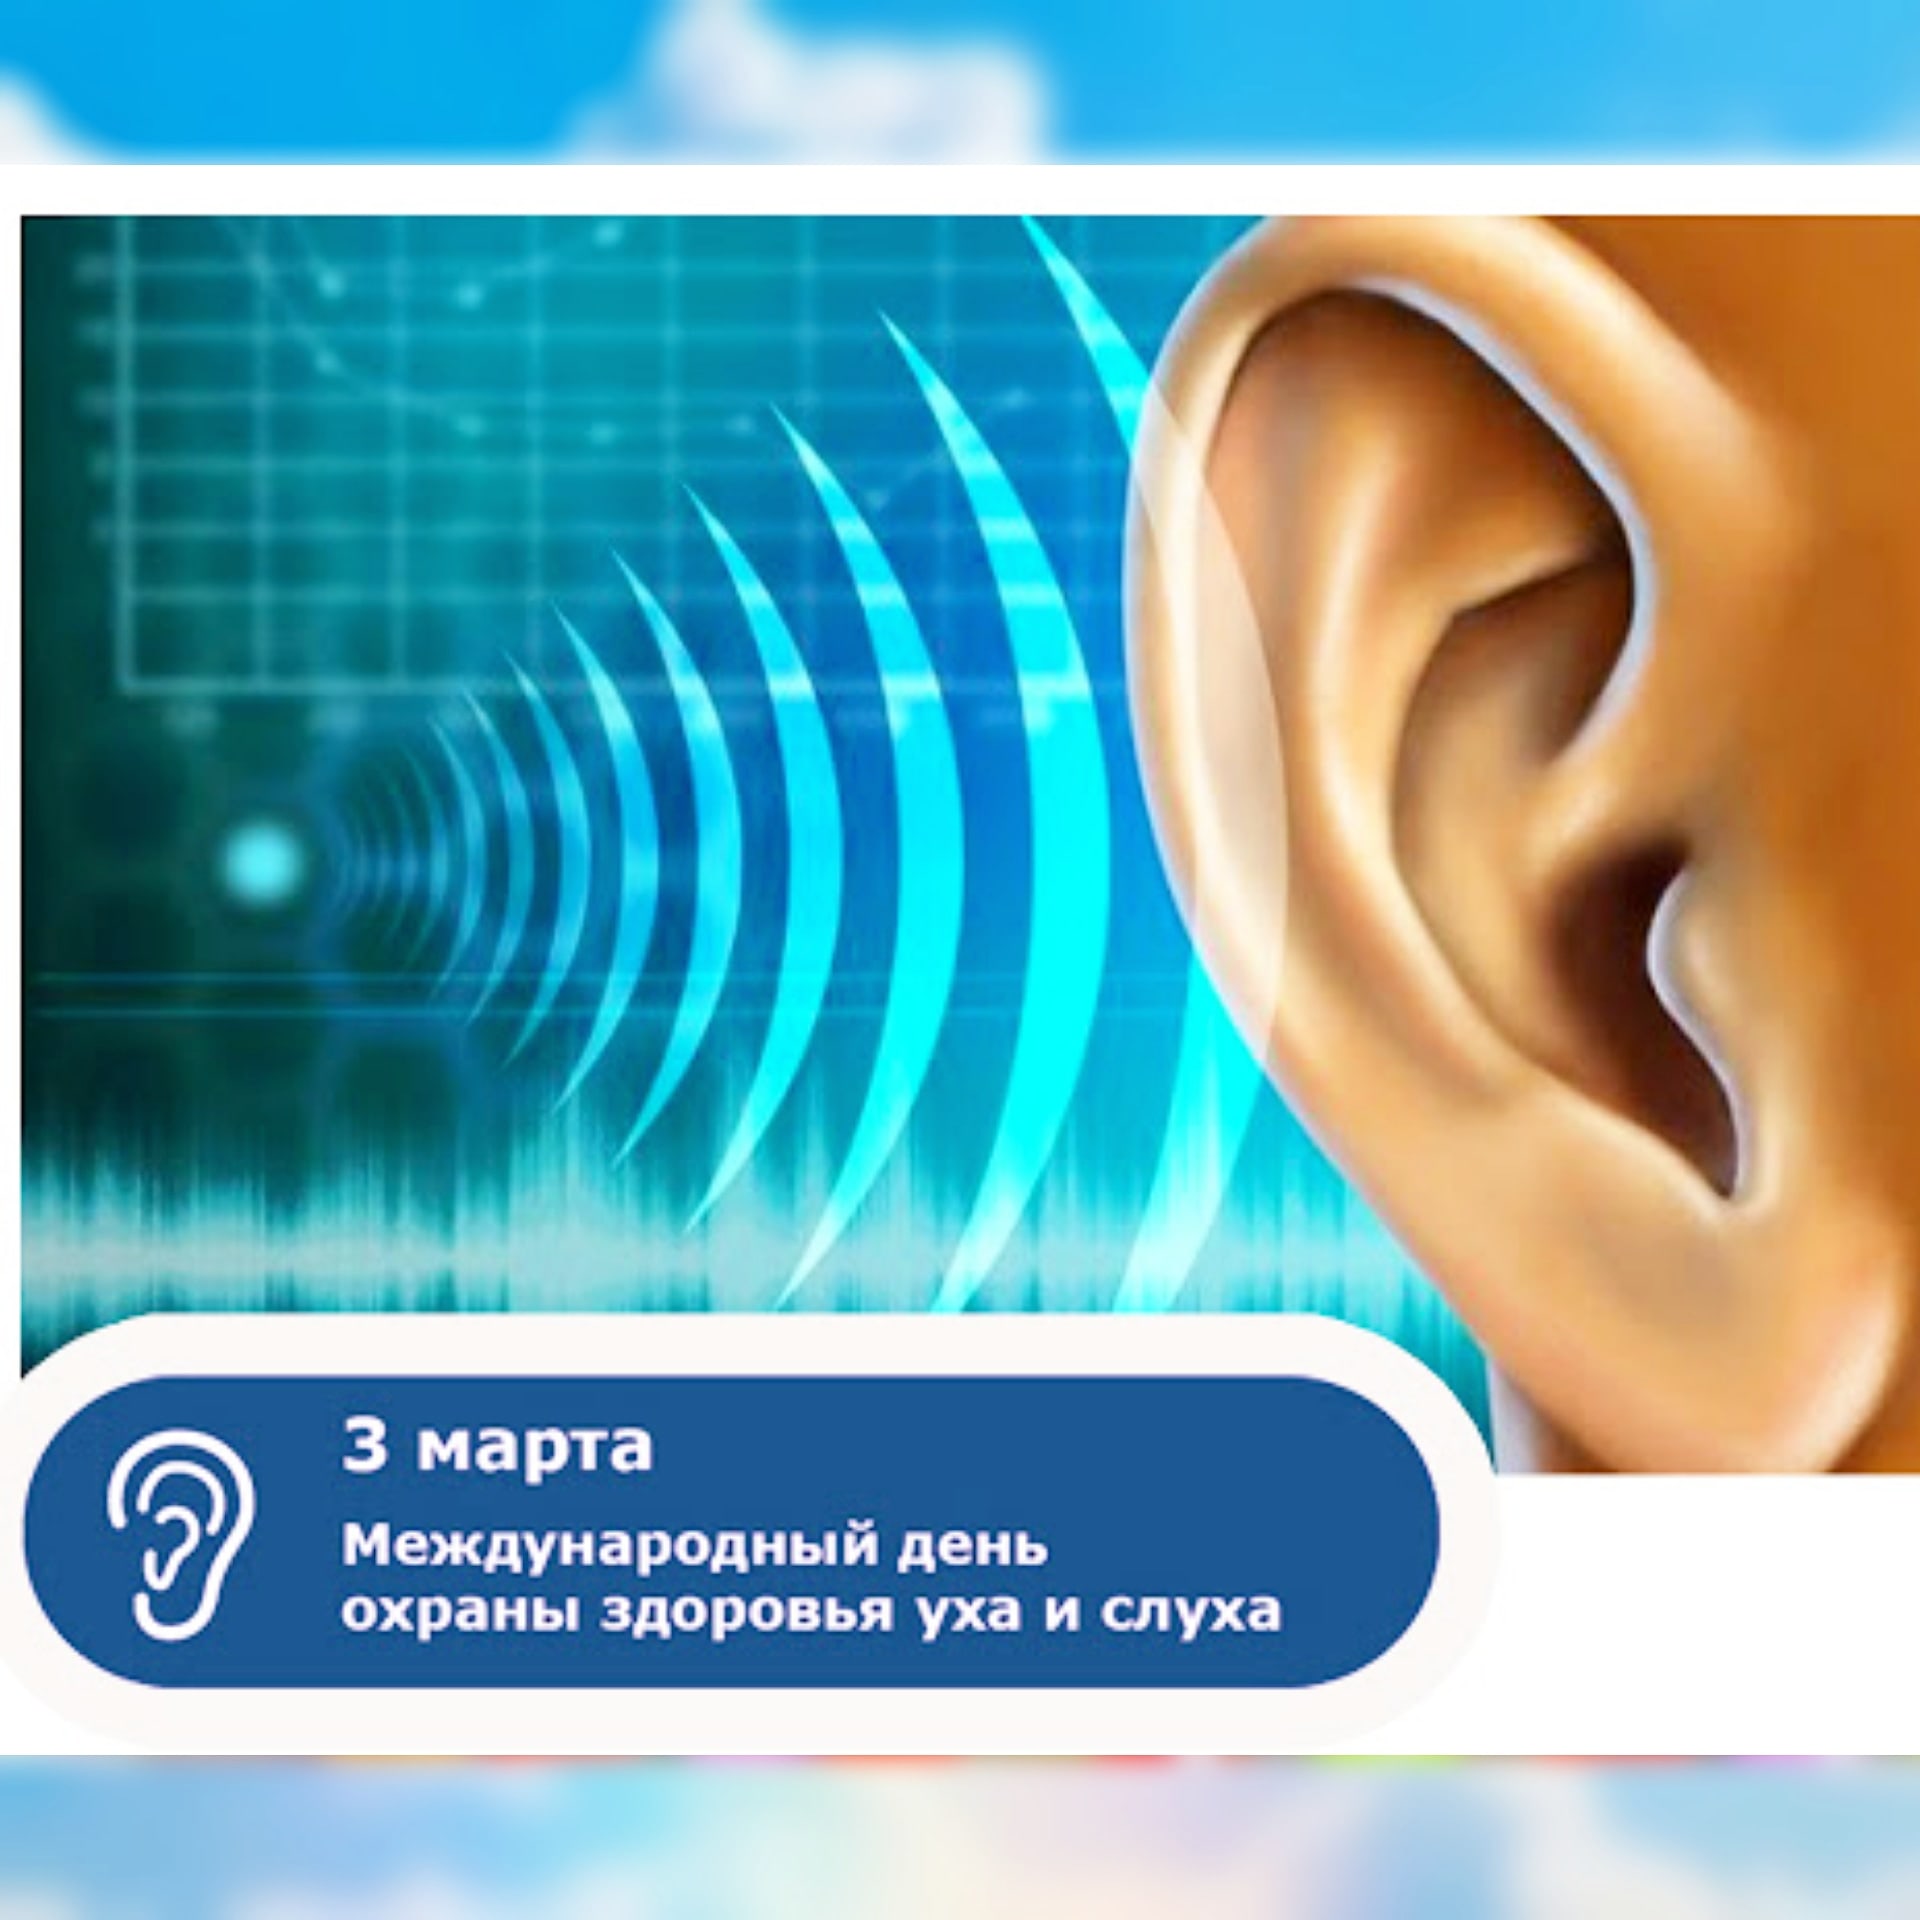 Международный день здоровья уха и слуха. Всемирный день слуха. Всемирный день здоровья уха и слуха. Международный день охраны уха и слуха.